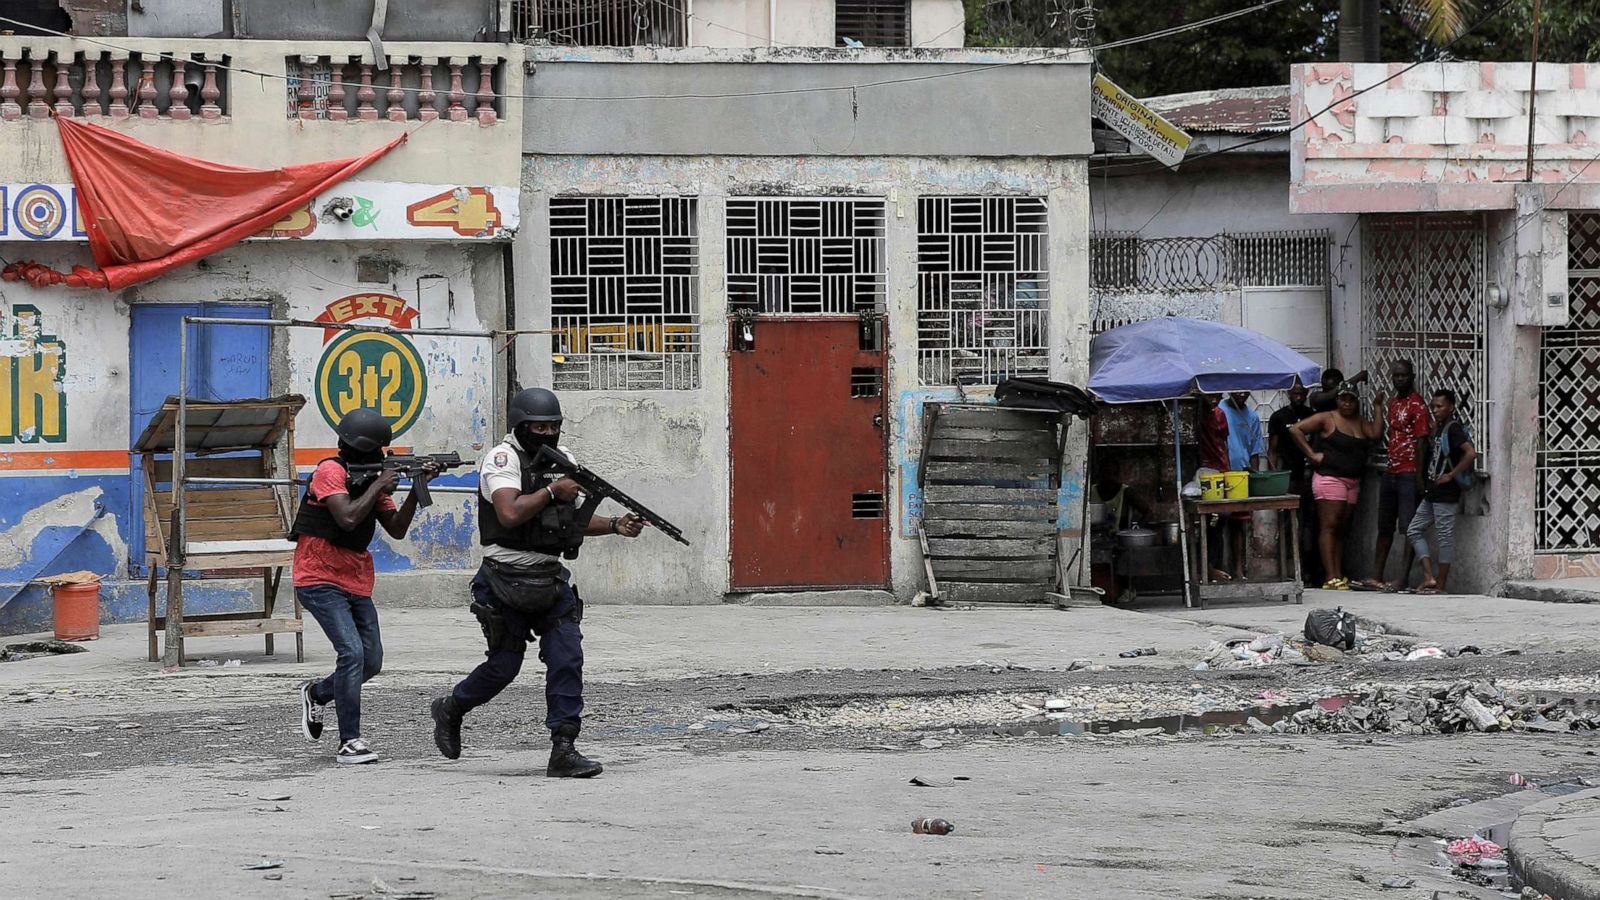 Haiti's gang violence worsens humanitarian crisis amid political turmoil -  ABC News